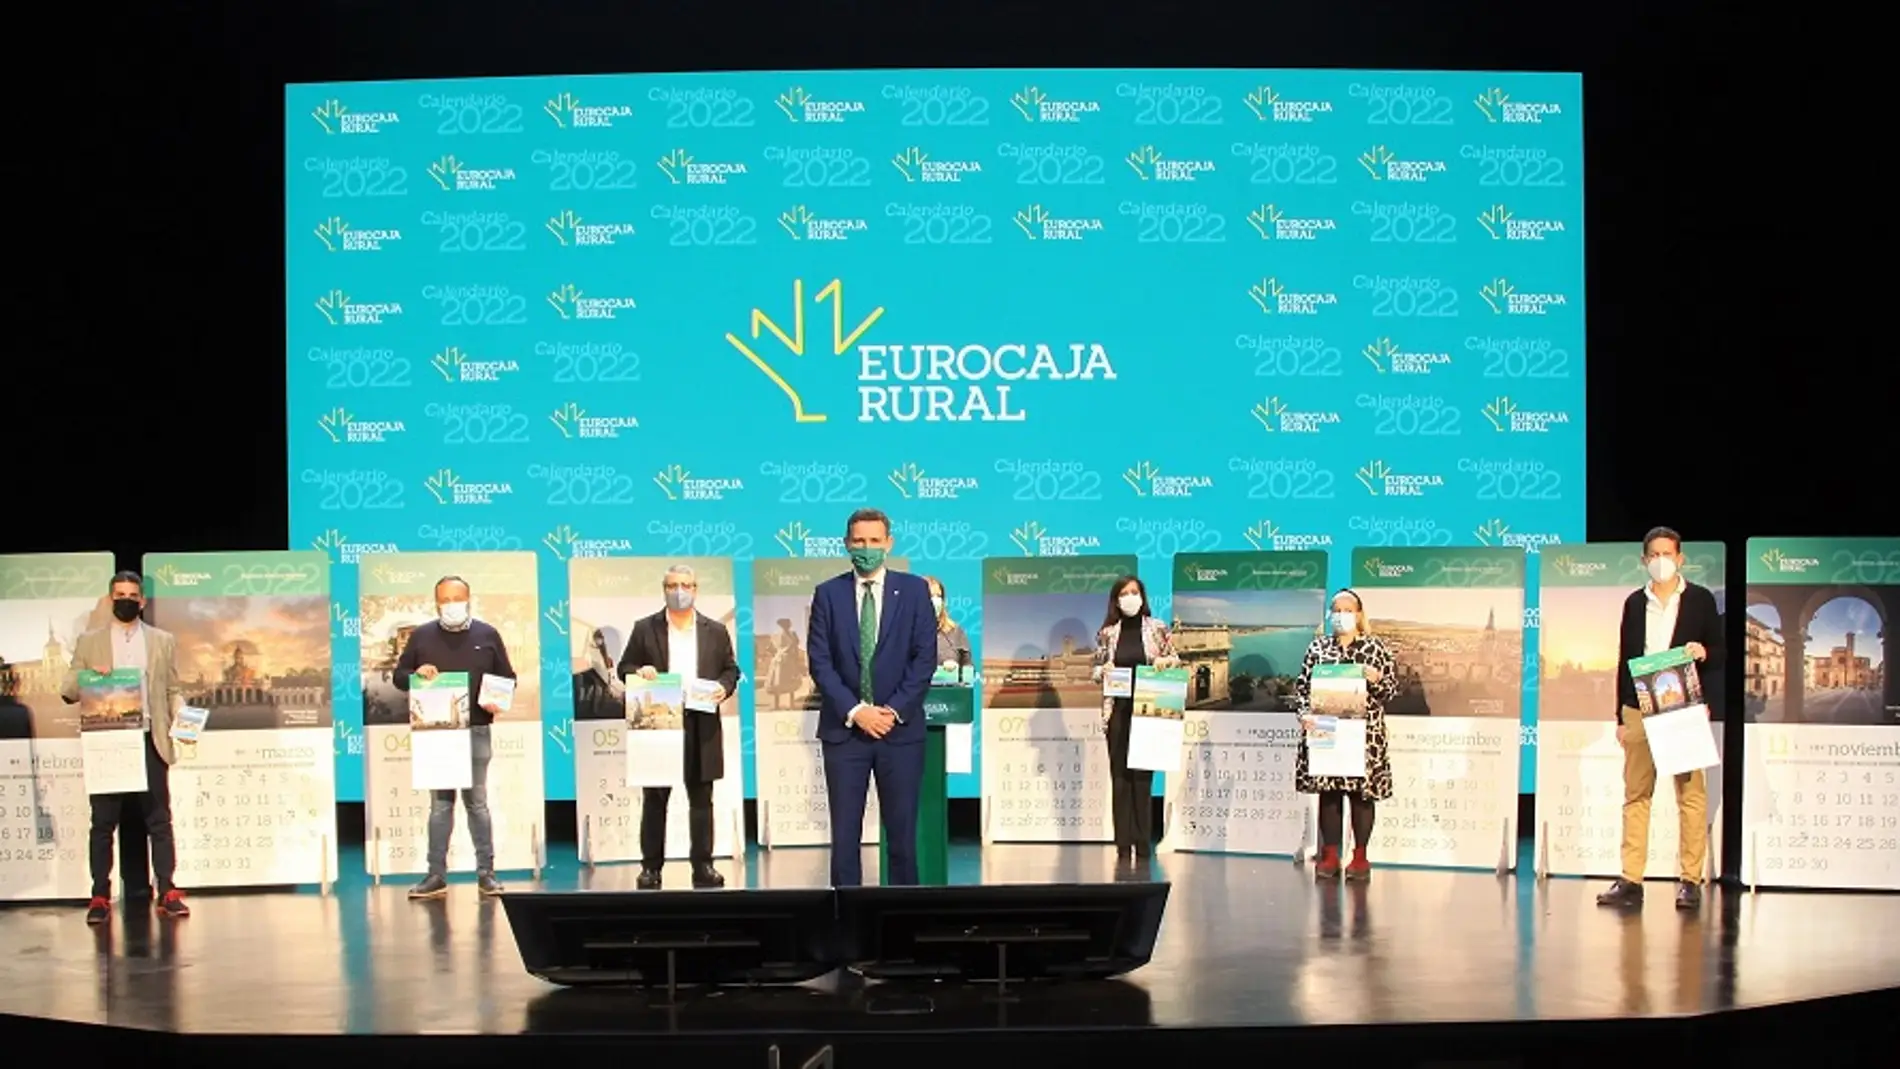  El calendario de Eurocaja Rural de 2022 nos anima a disfrutar del turismo y la economía local